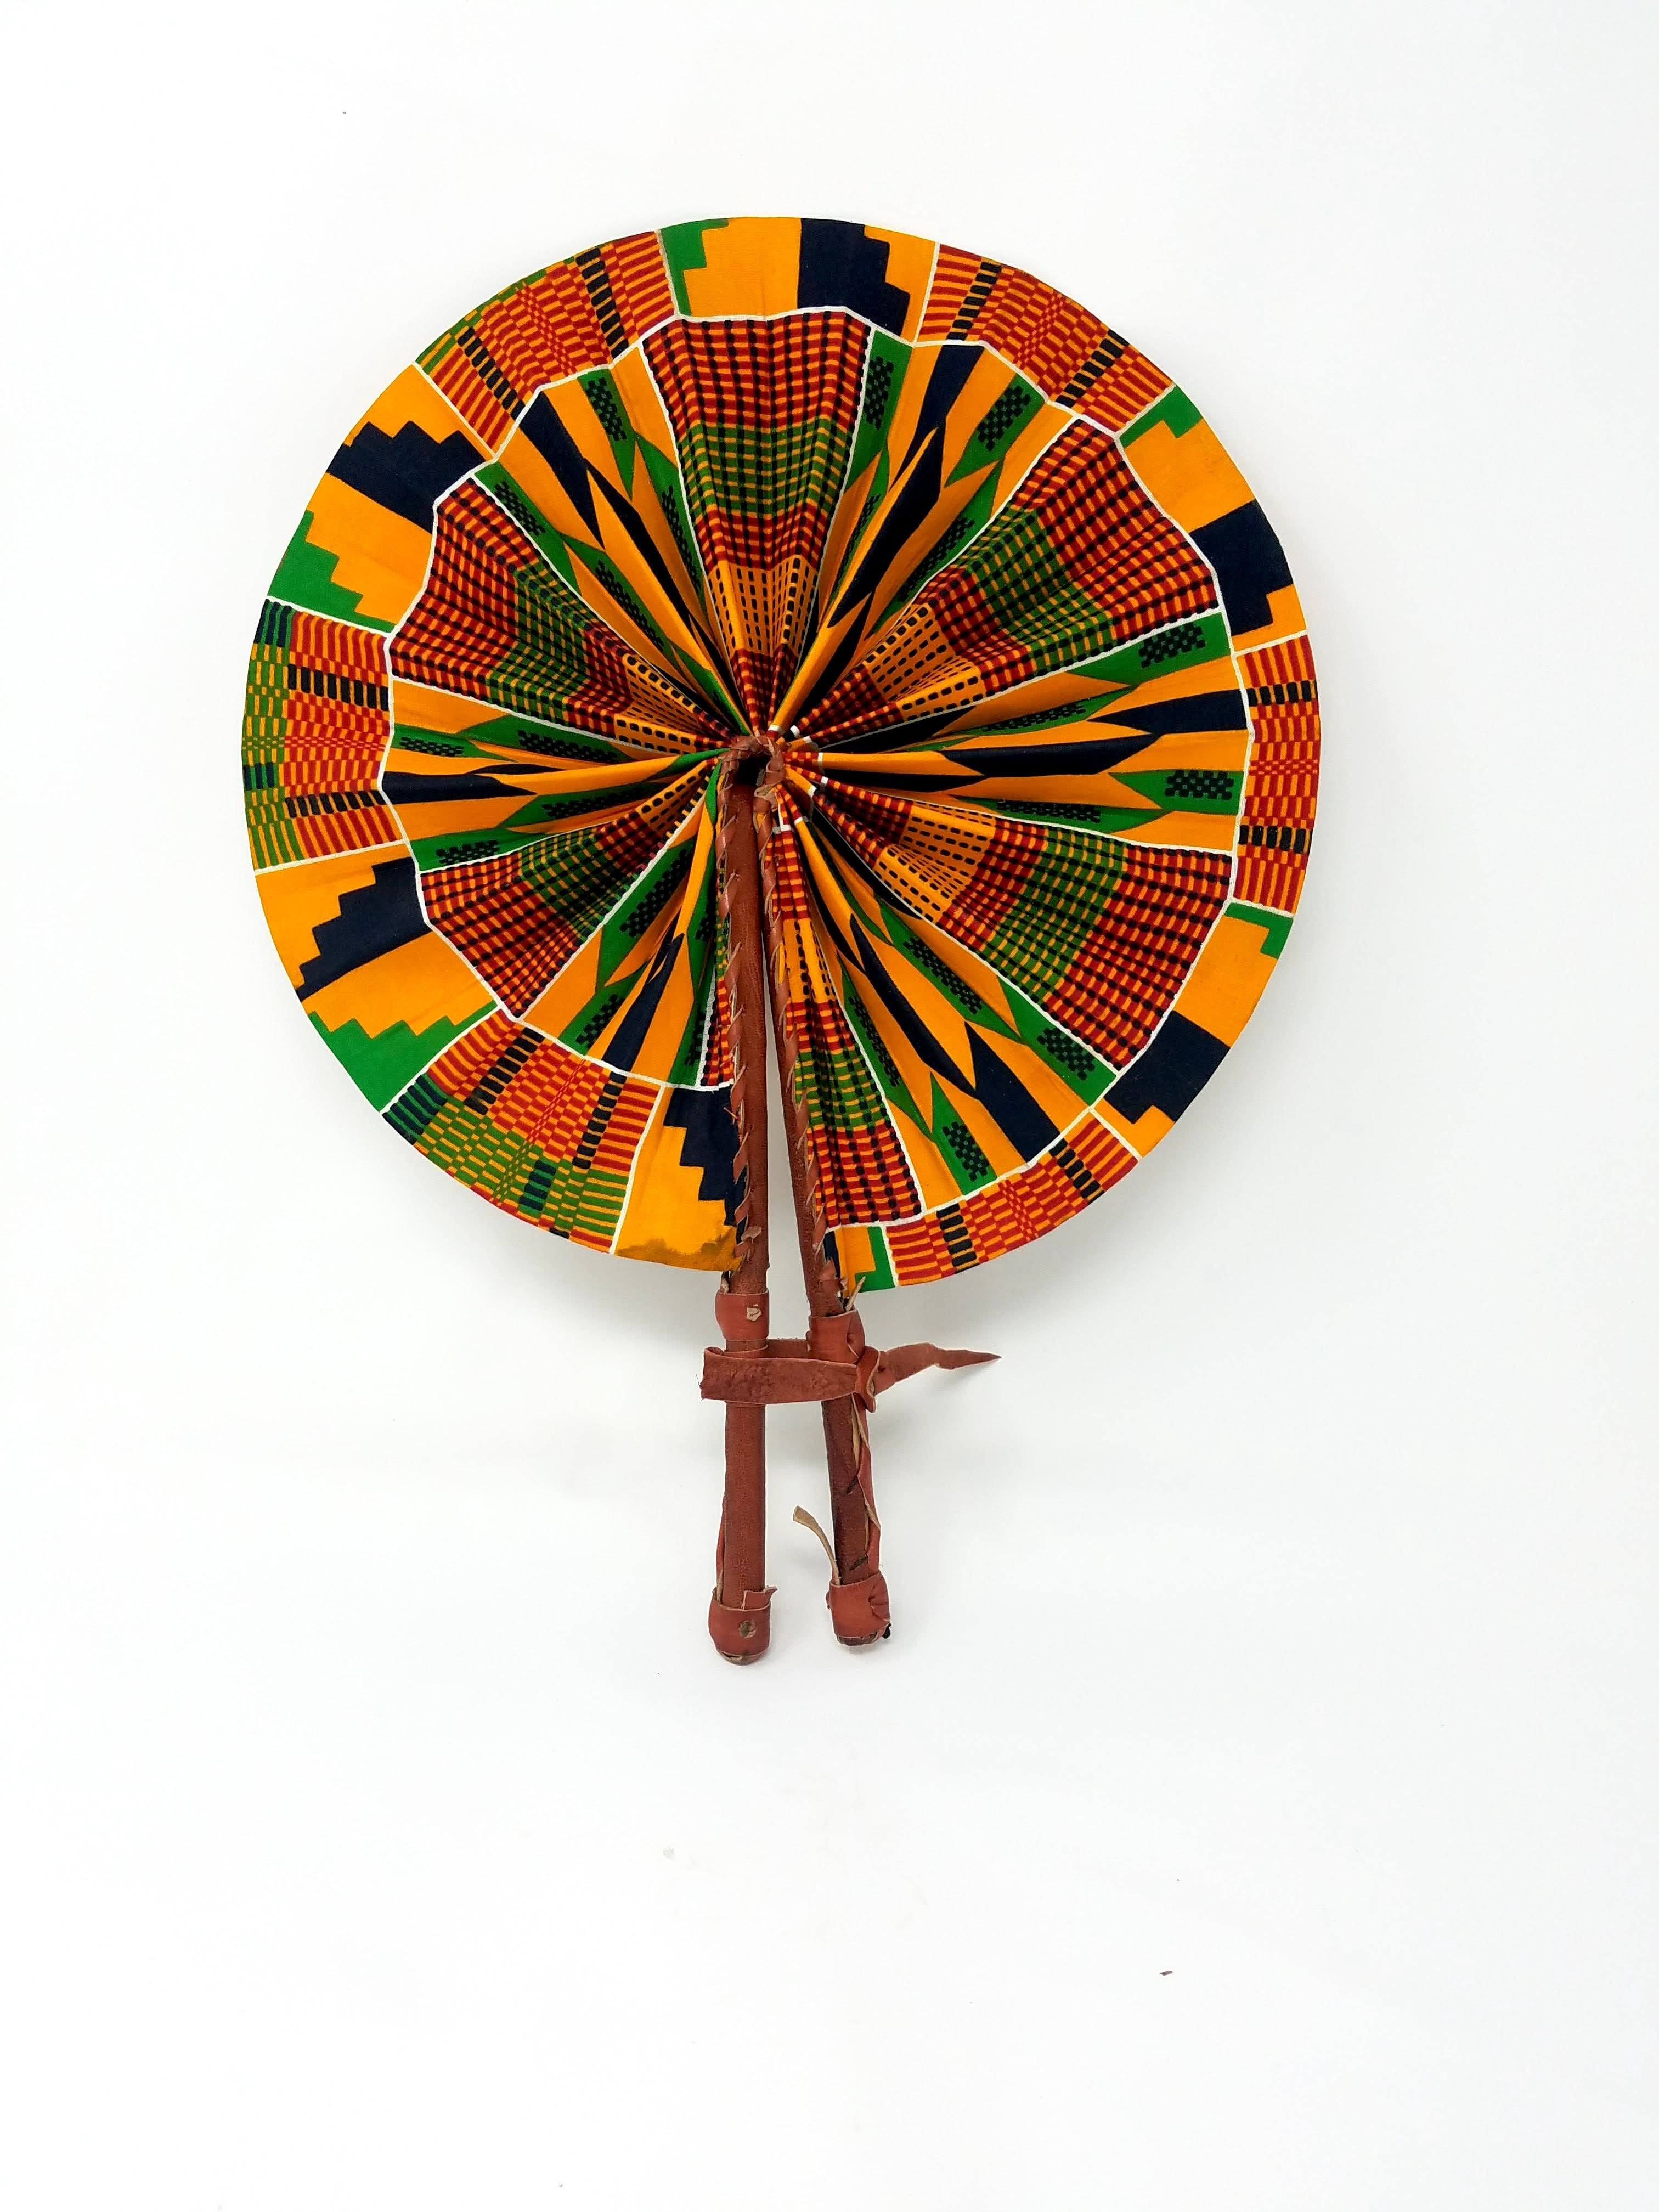 Handmade African Print Fans